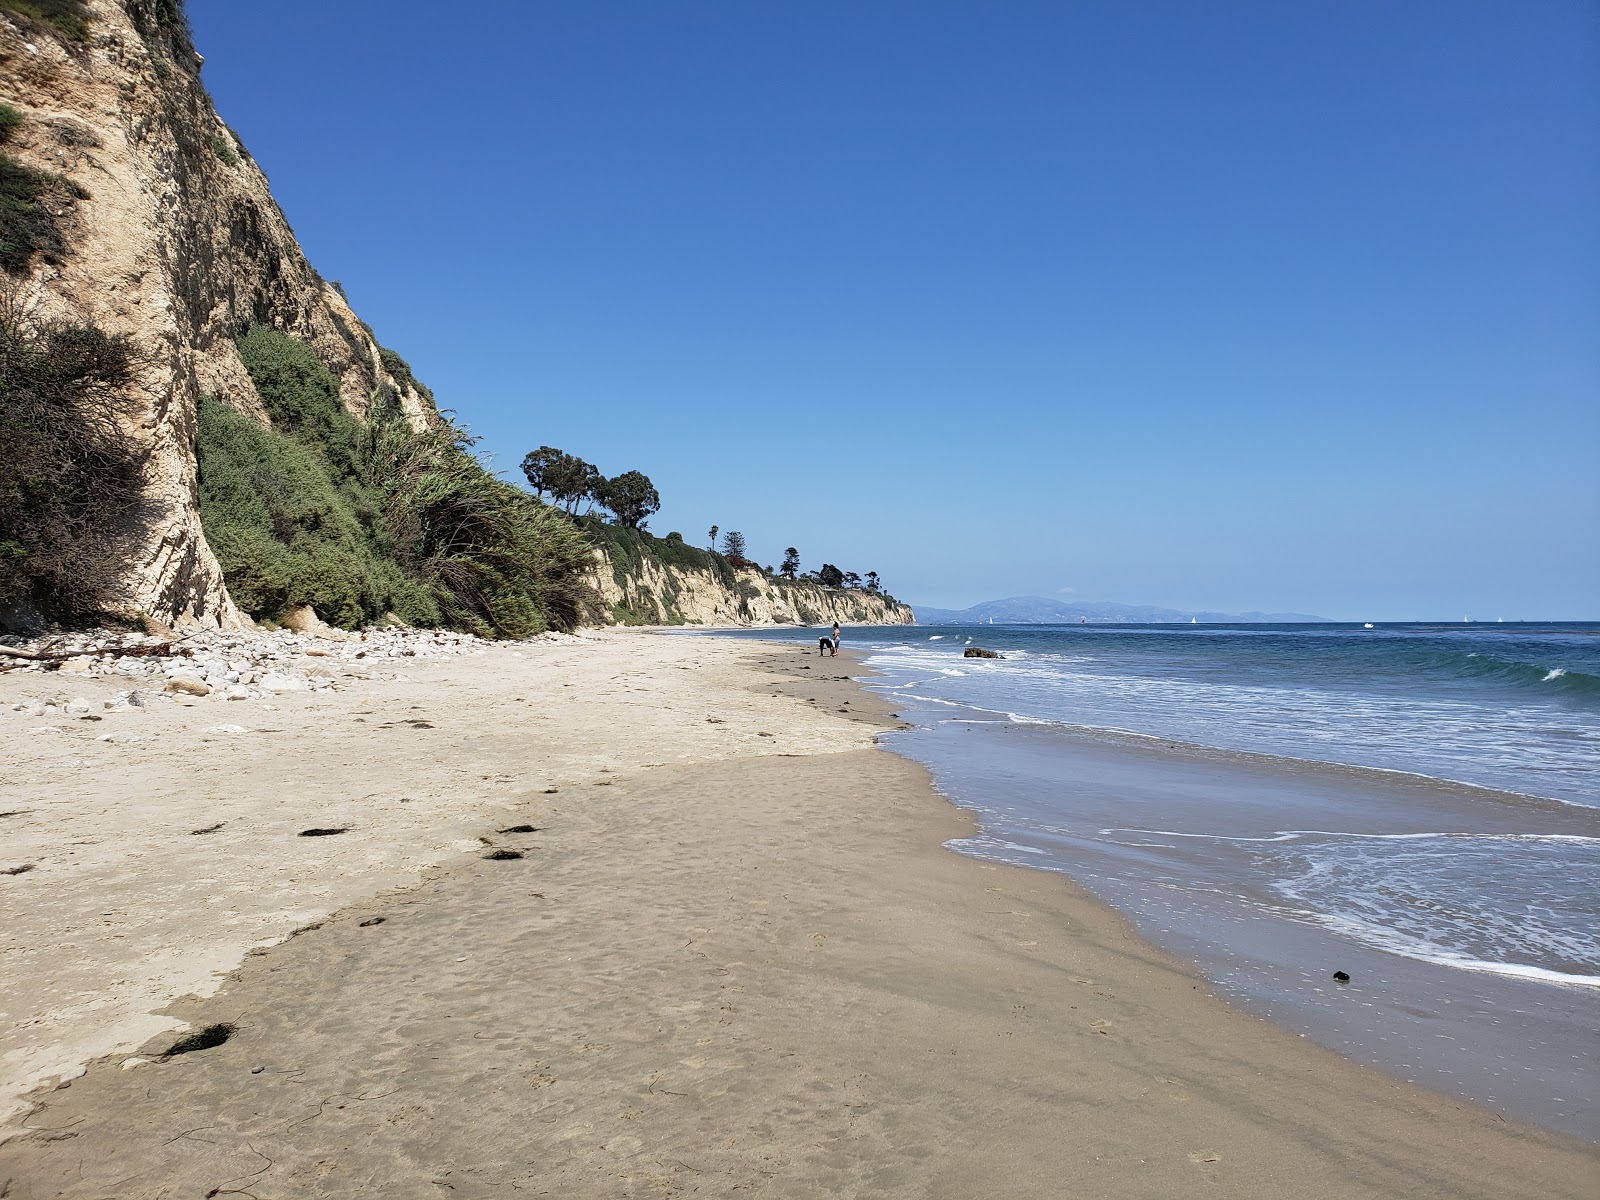 Fotografie cu Arroyo Burro Beach cu o suprafață de nisip strălucitor